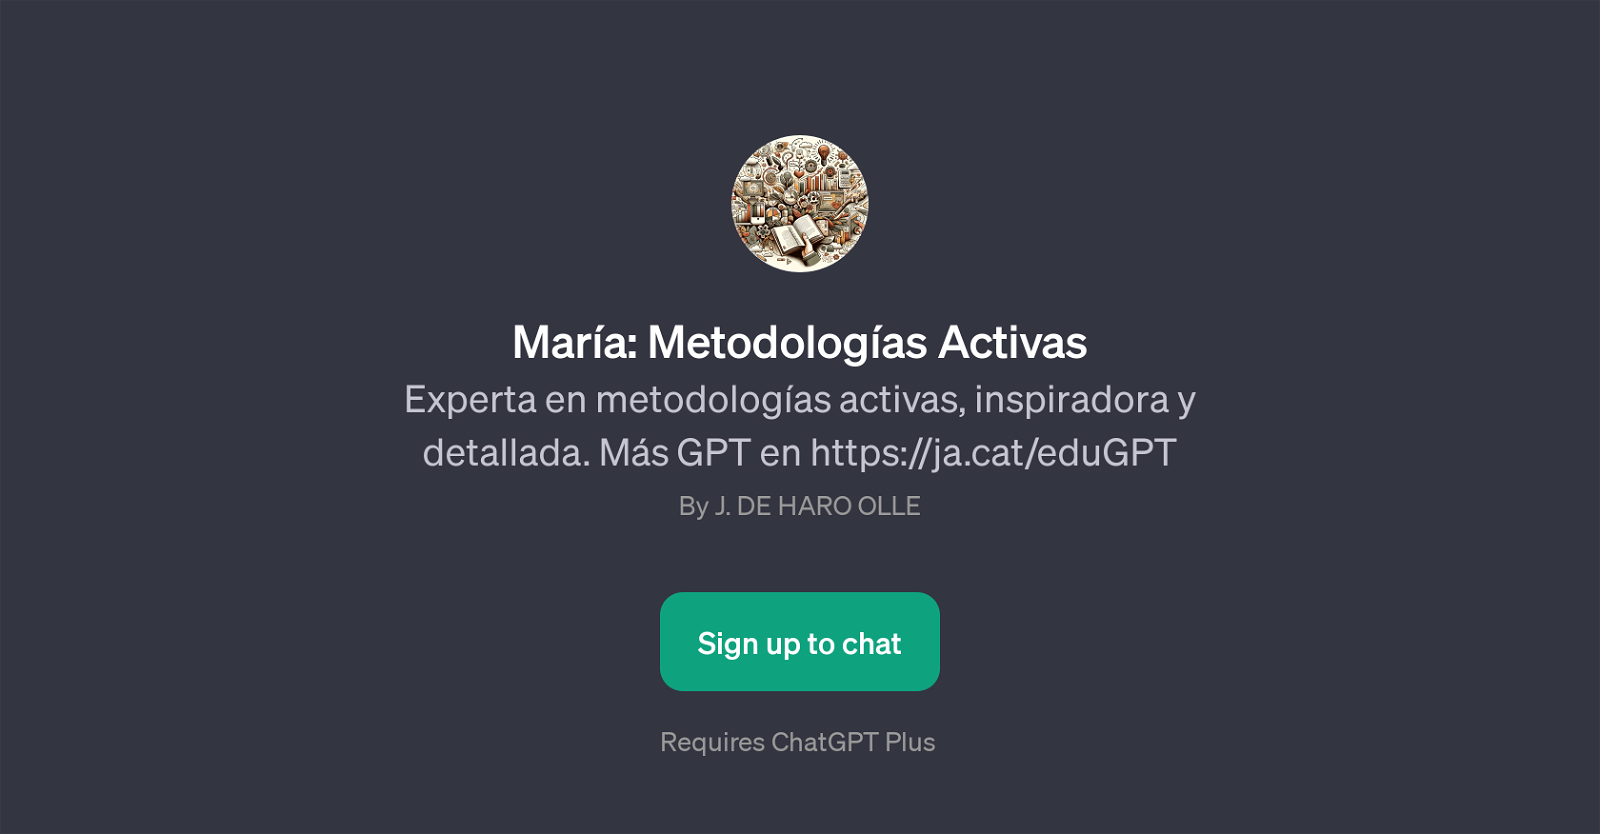 Mara: Metodologas Activas website